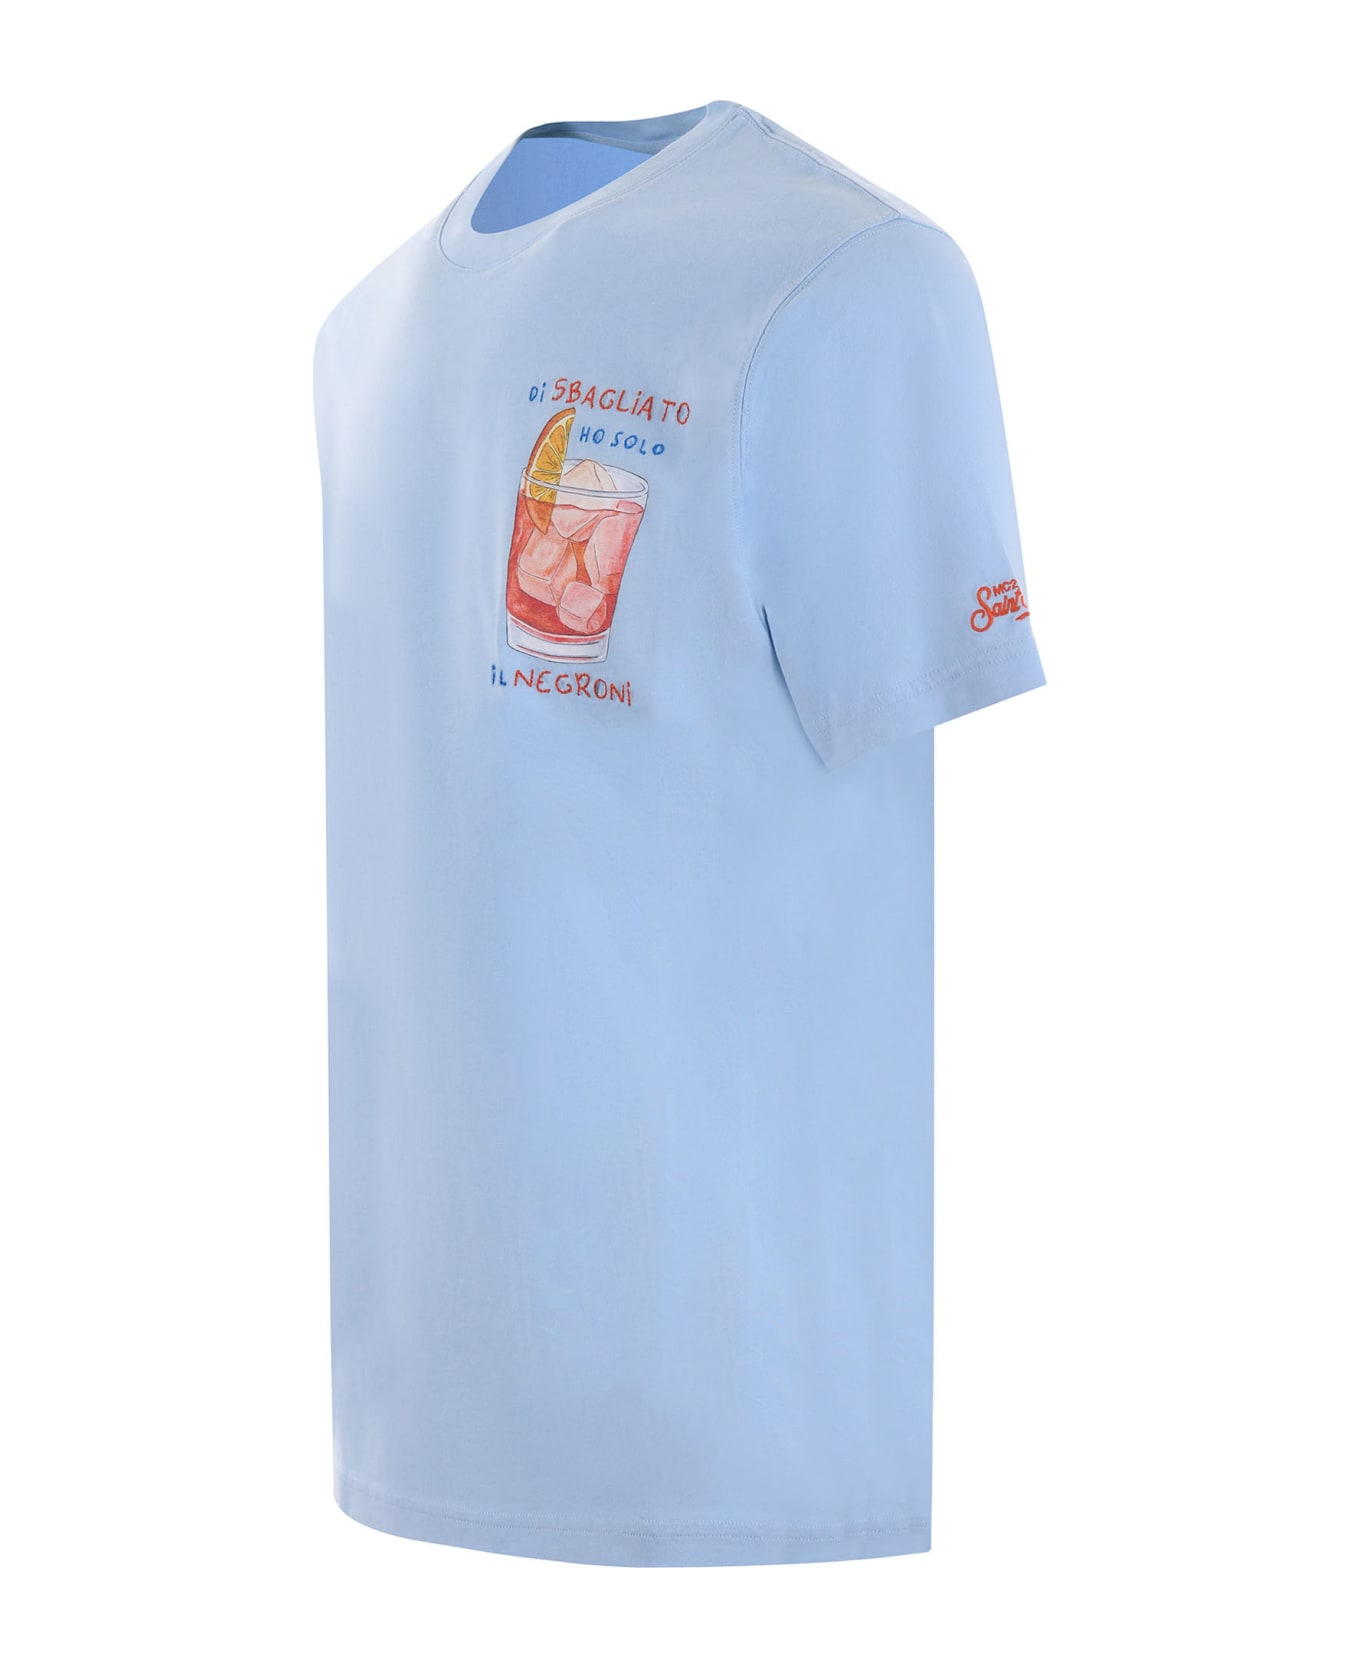 MC2 Saint Barth T-shirt Mc2 Saint Barth "di Sbagliato Ho Solo Il Negroni" In Cotone Disponibile Store Scafati - Celeste シャツ